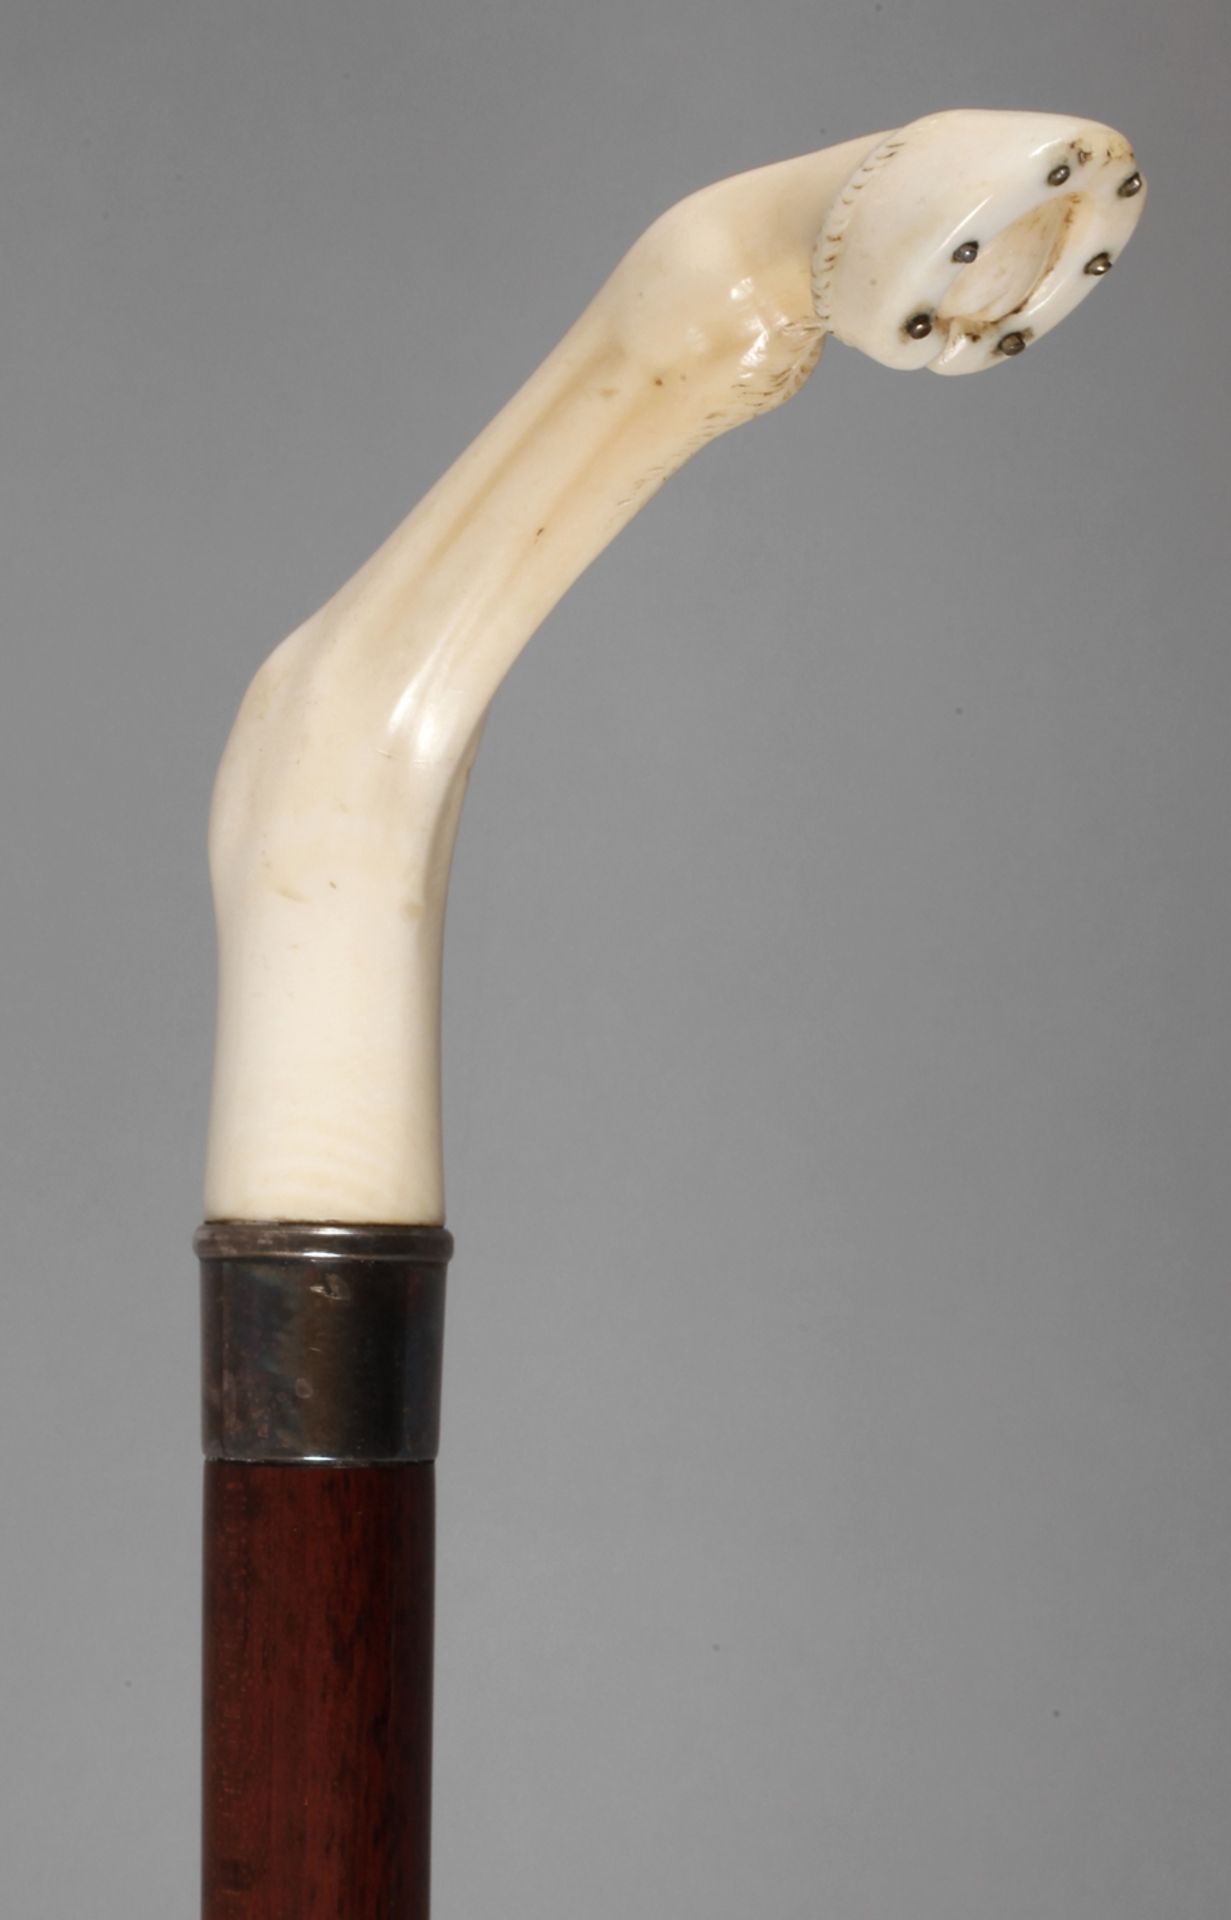 Flanierstock Elfenbein 1920er Jahre, figürlich gearbeitetes Griffstück in Form eines Pferdebeins mit